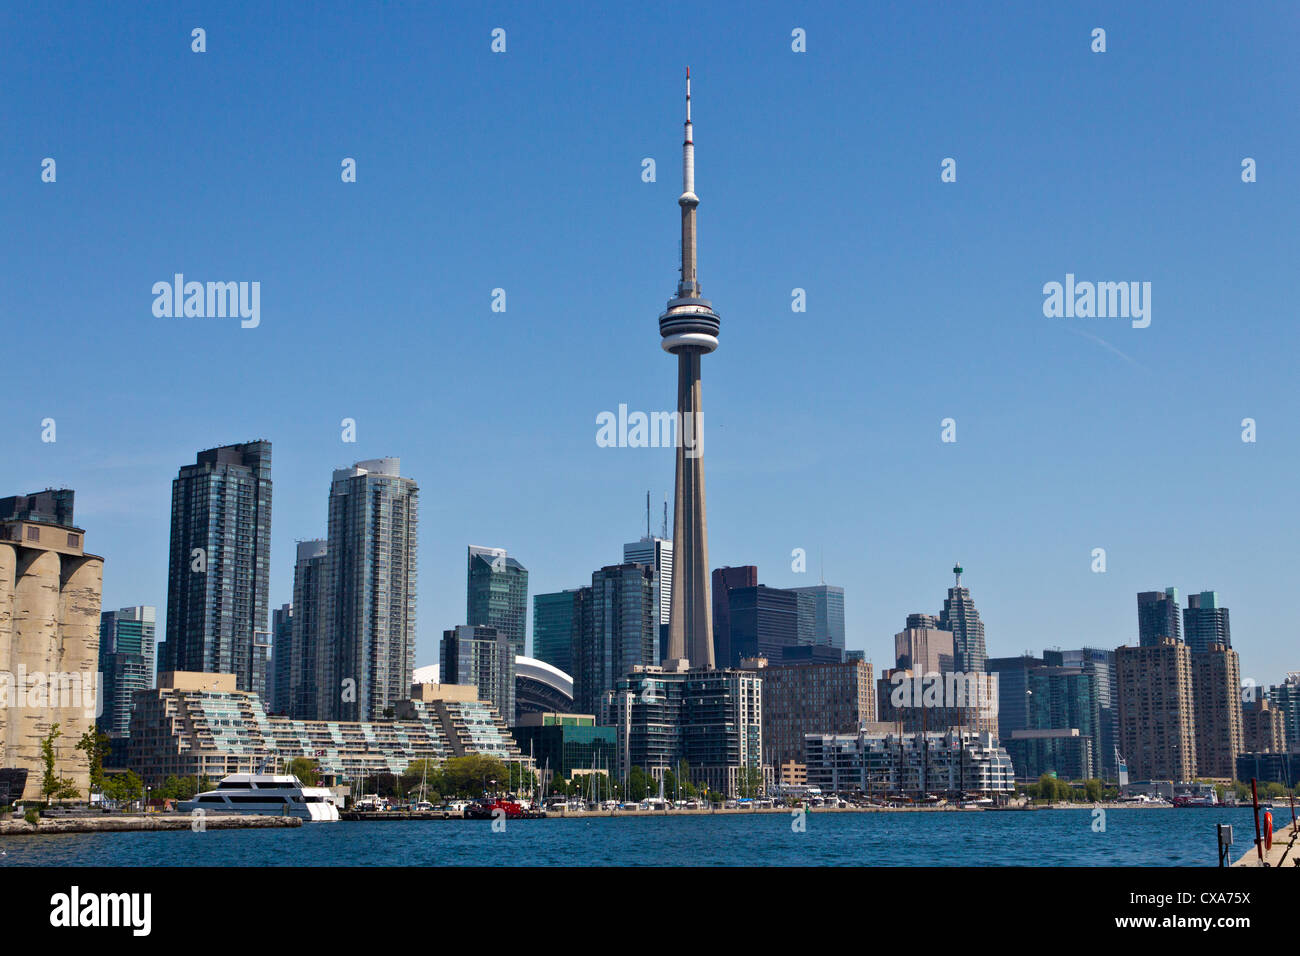 Le centre-ville de Toronto Skyline avec la Tour du CN. Banque D'Images